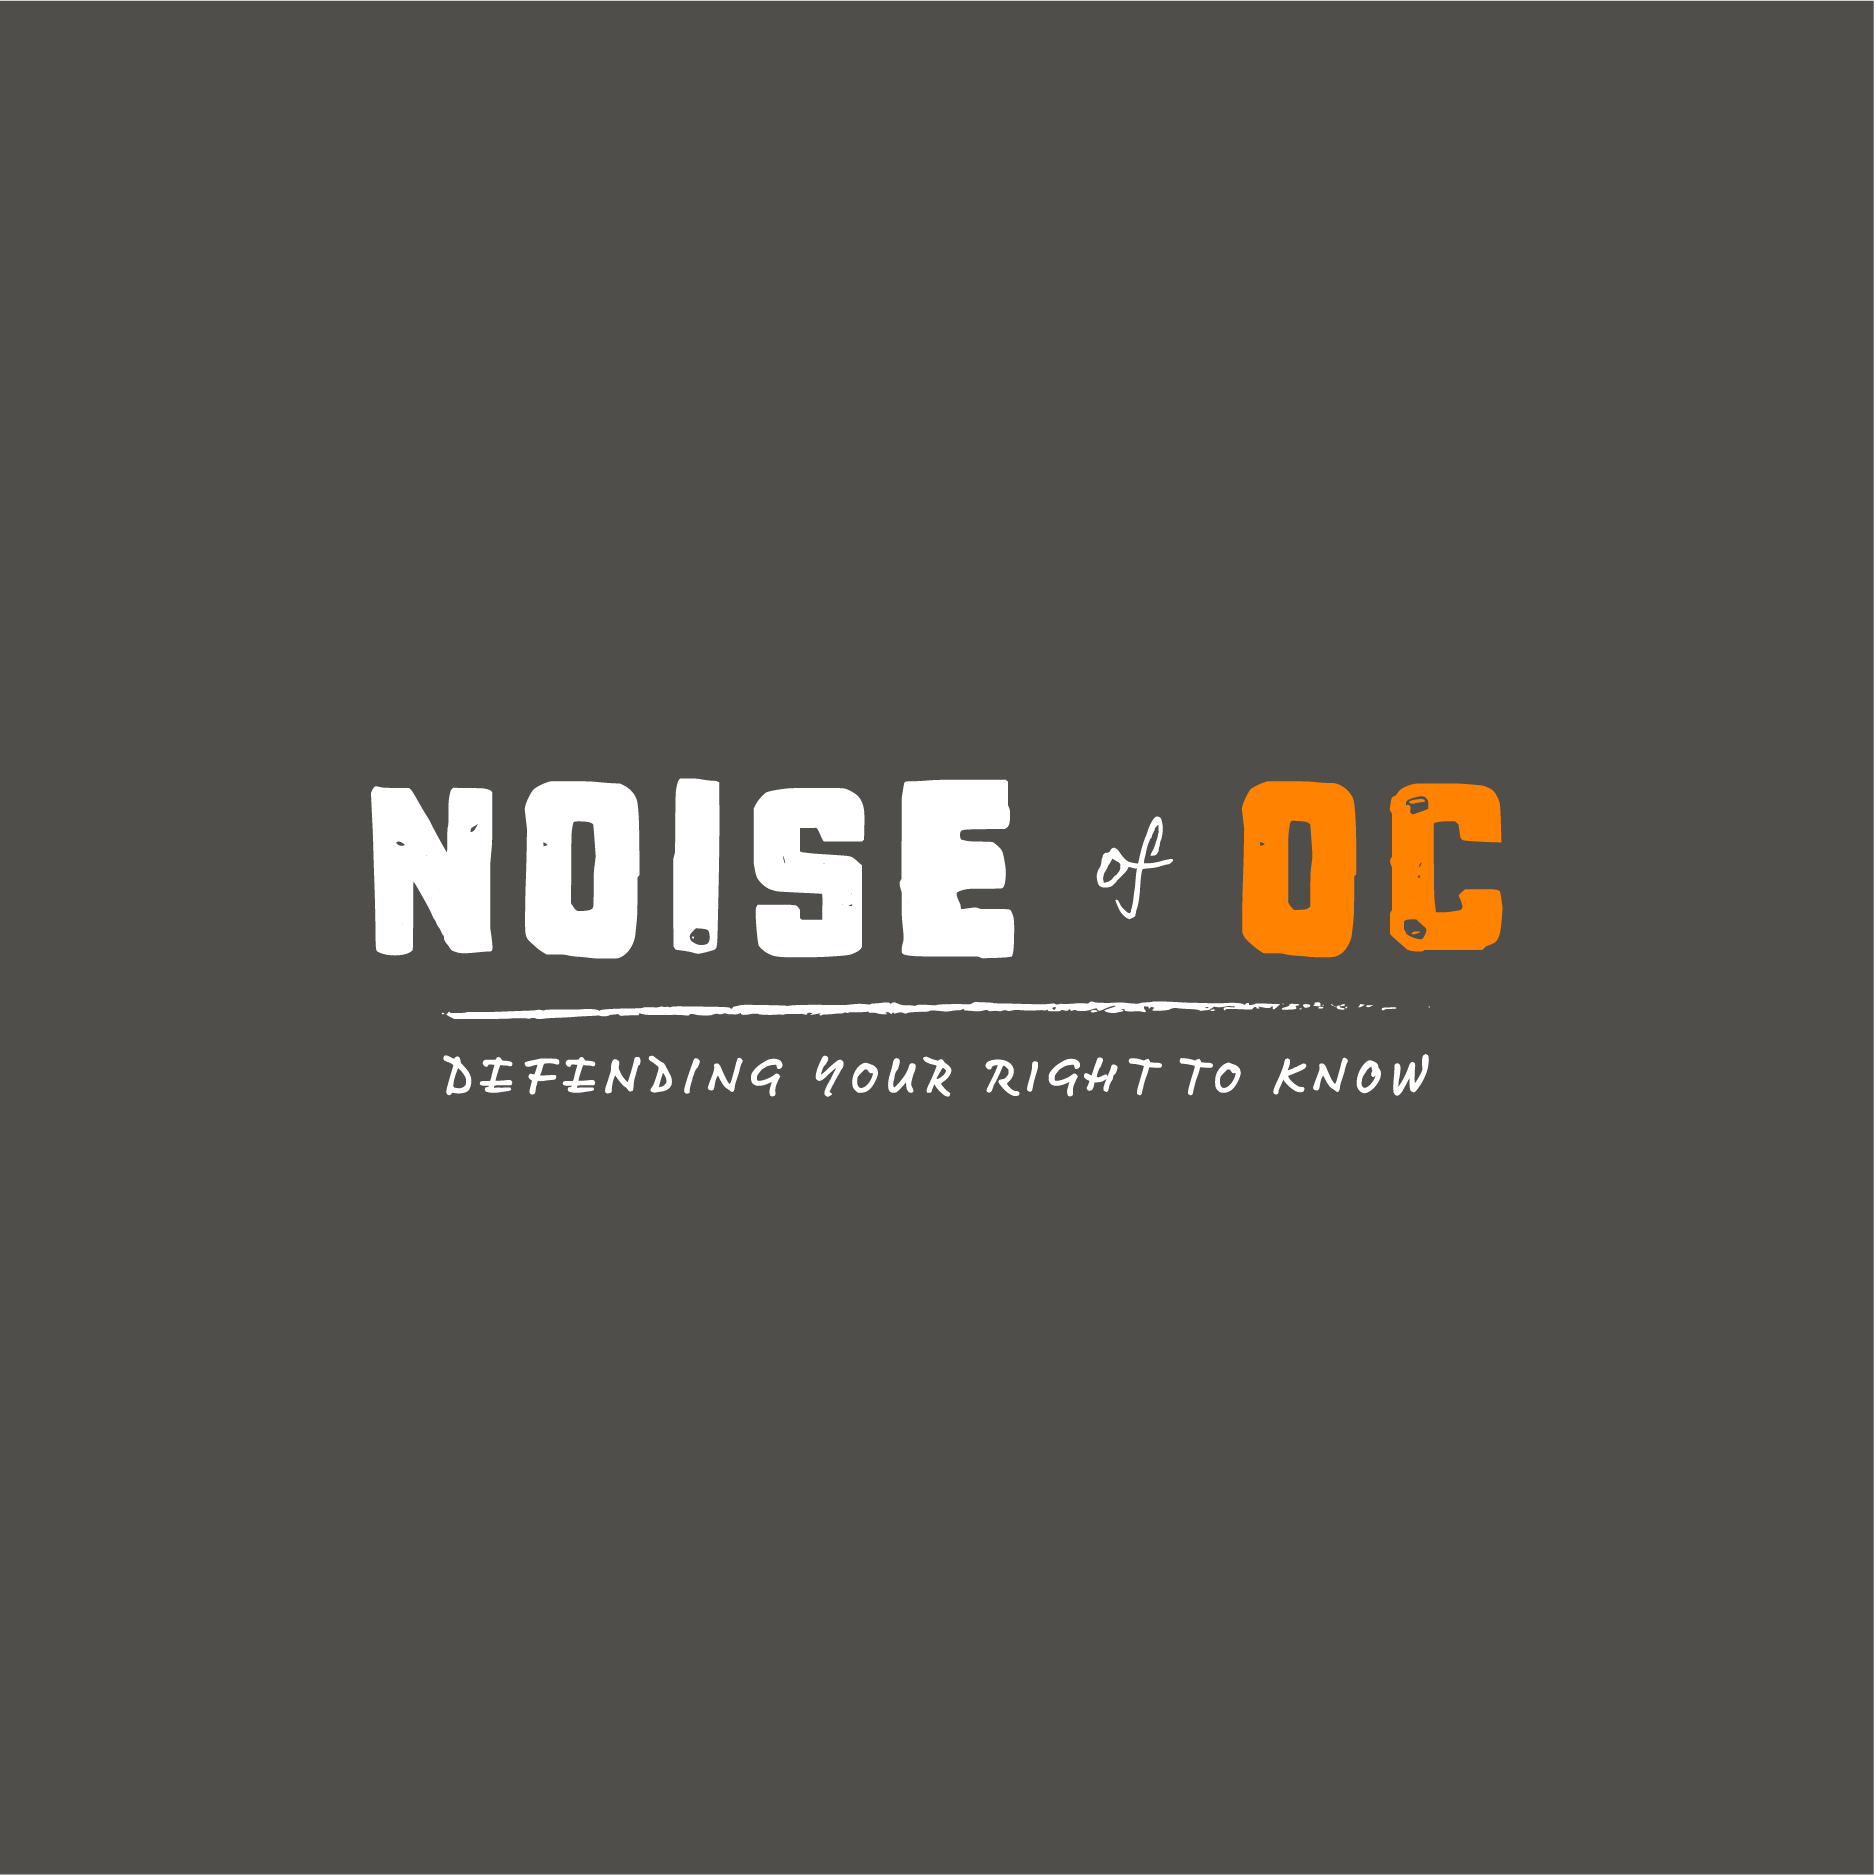 Voice of OC 2022 News Match Fundraiser: Noise of OC (Travel Mug) shirt design - zoomed